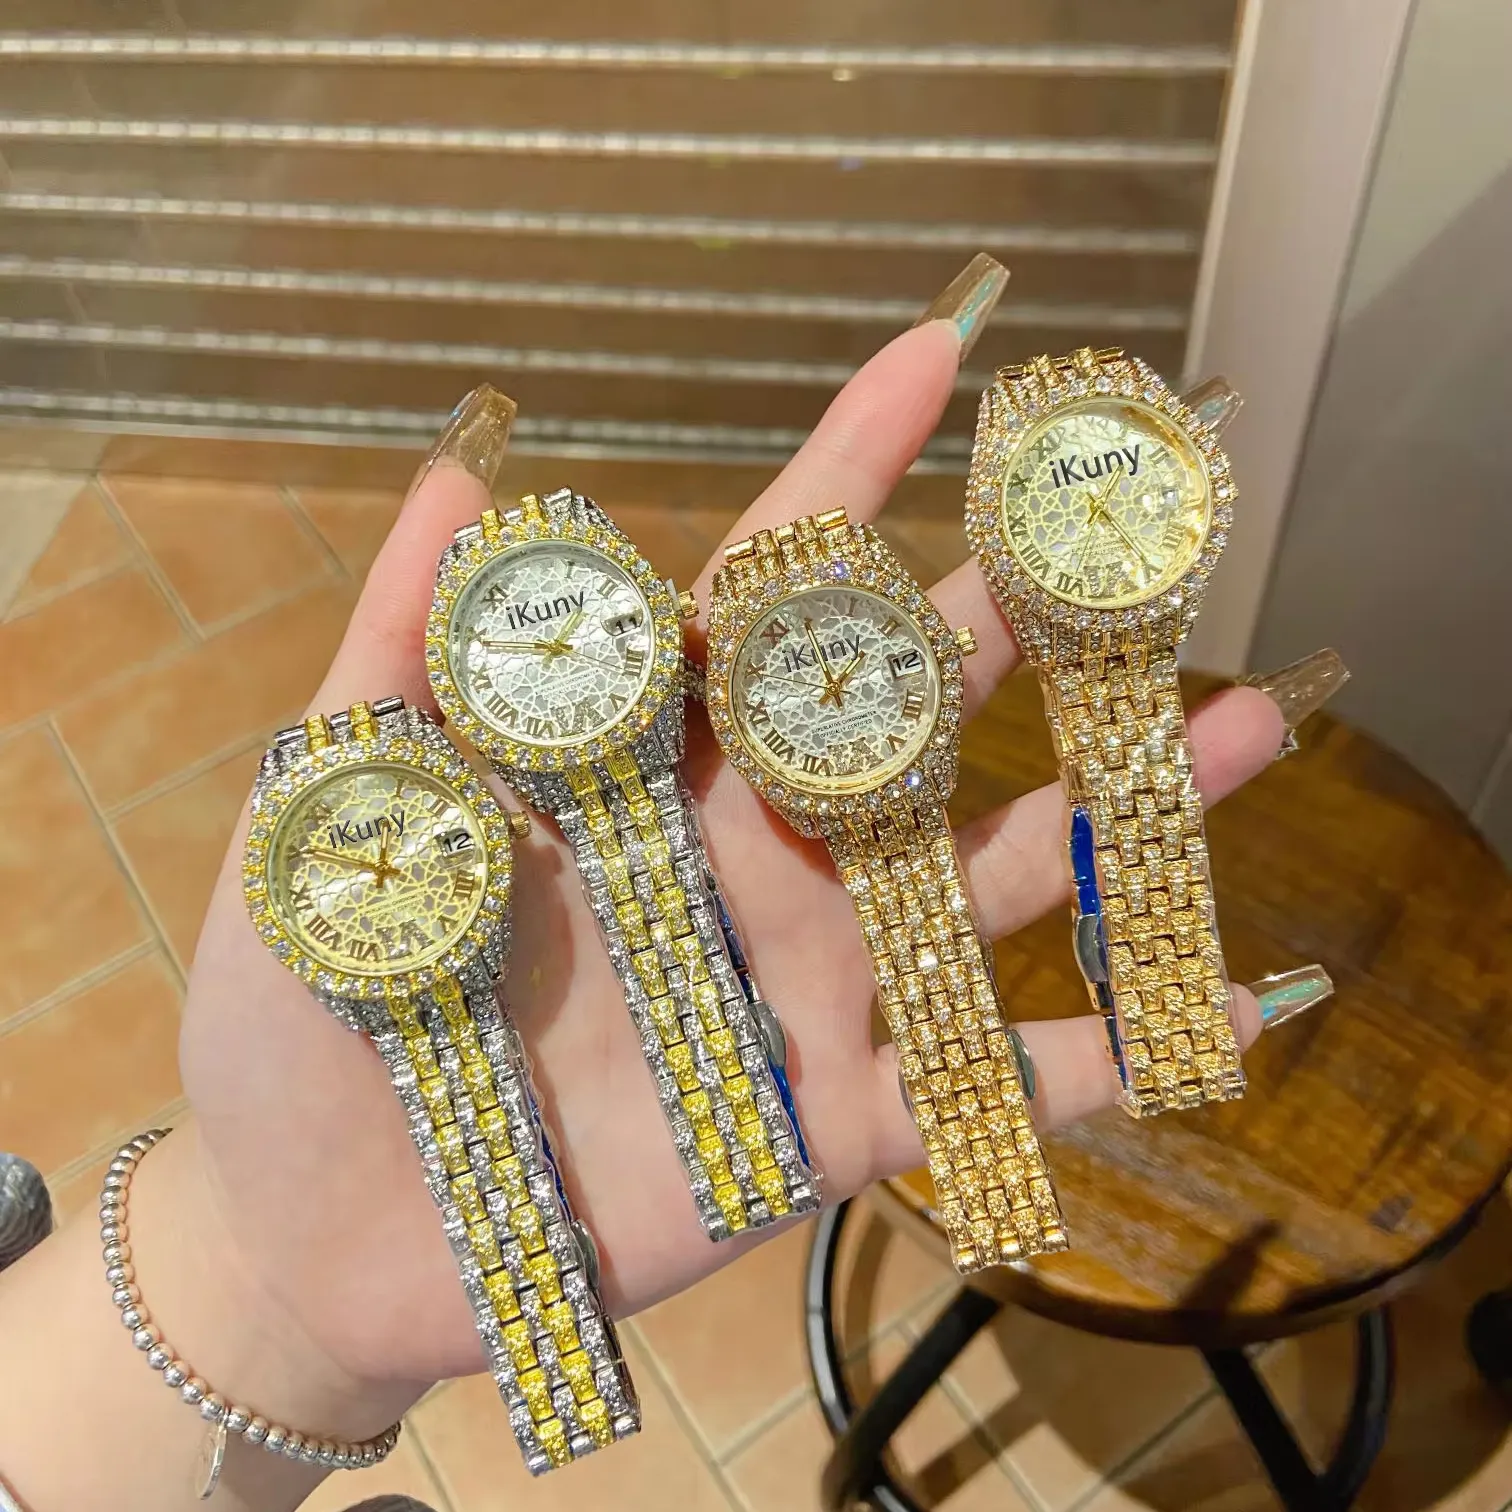 ساعة يد أنيقة فاخرة أنيقة من علامة تجارية للأقمشة الكبرى للنساء تُصمم حسب الطلب ومصممة بنظام كوارتز أوتوماتيكي